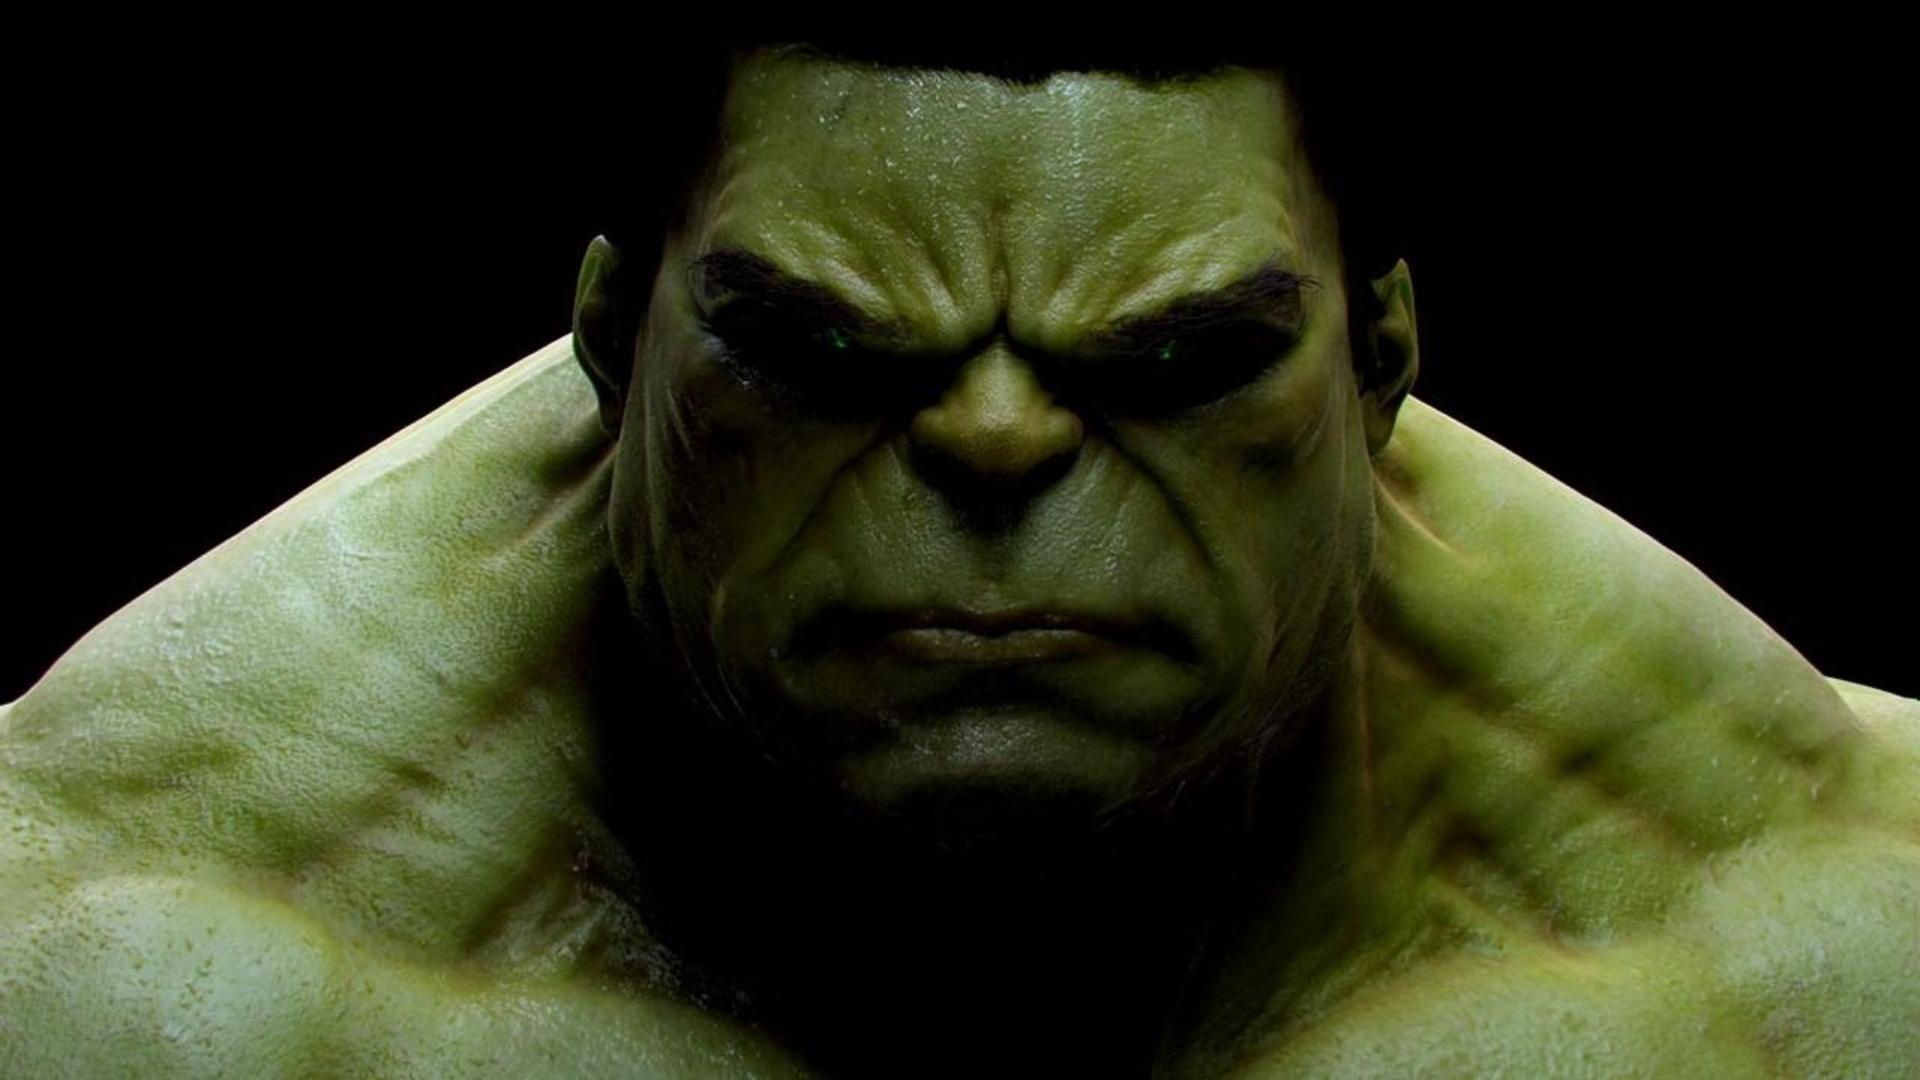 Hulk - Angry Hulk , HD Wallpaper & Backgrounds